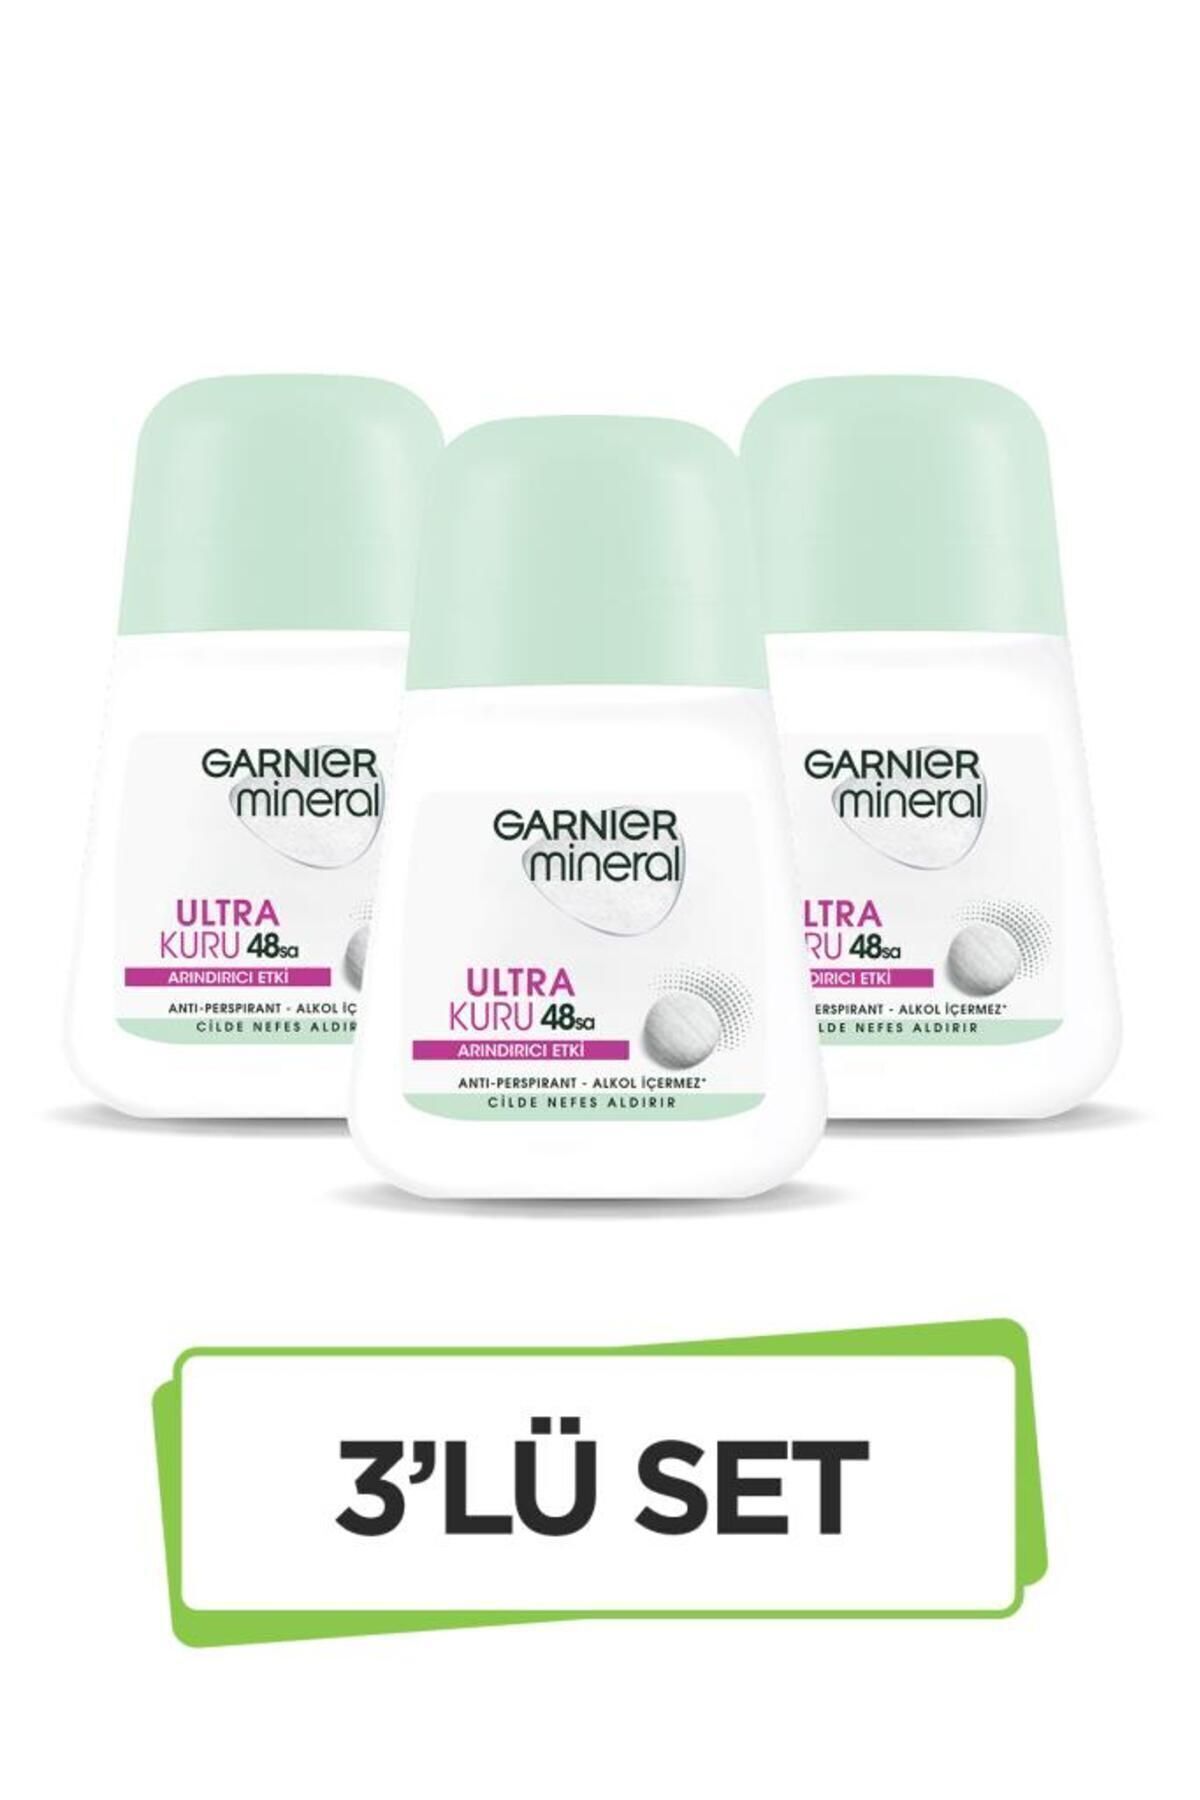 Garnier Mineral Ultra Kuru Roll-on Deodorant 3'lü Set